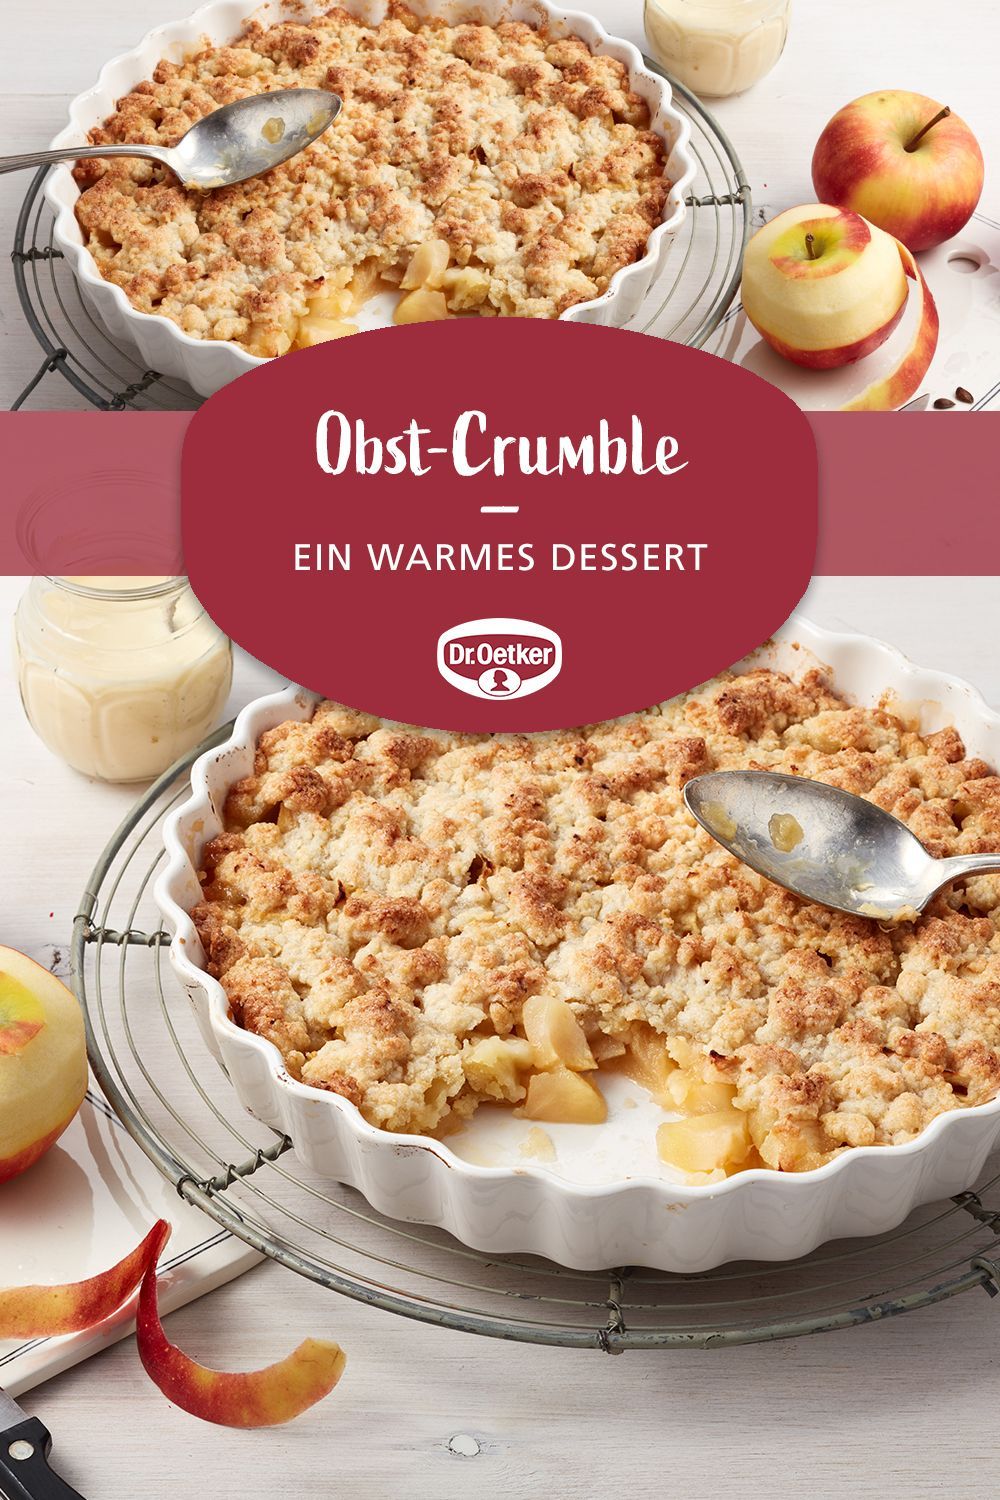 Obst-Crumble -   12 warmes desserts Weihnachten ideas